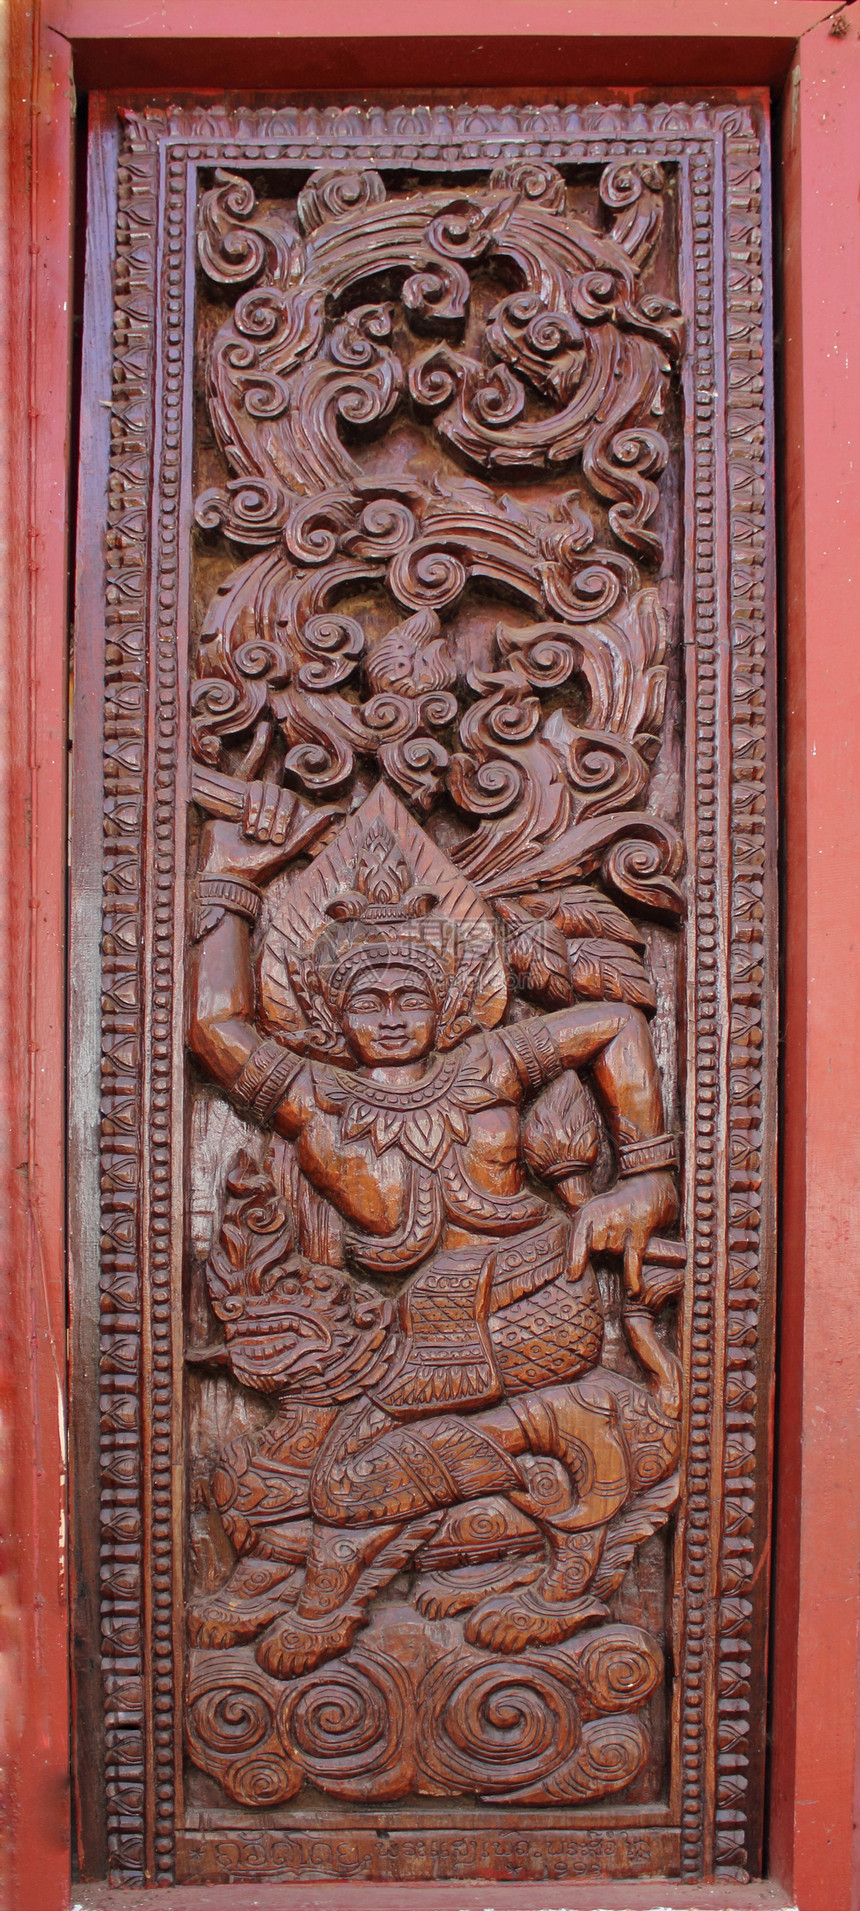 门外装饰木头文化风格雕塑雕像木工艺术寺庙入口万象雕刻图片